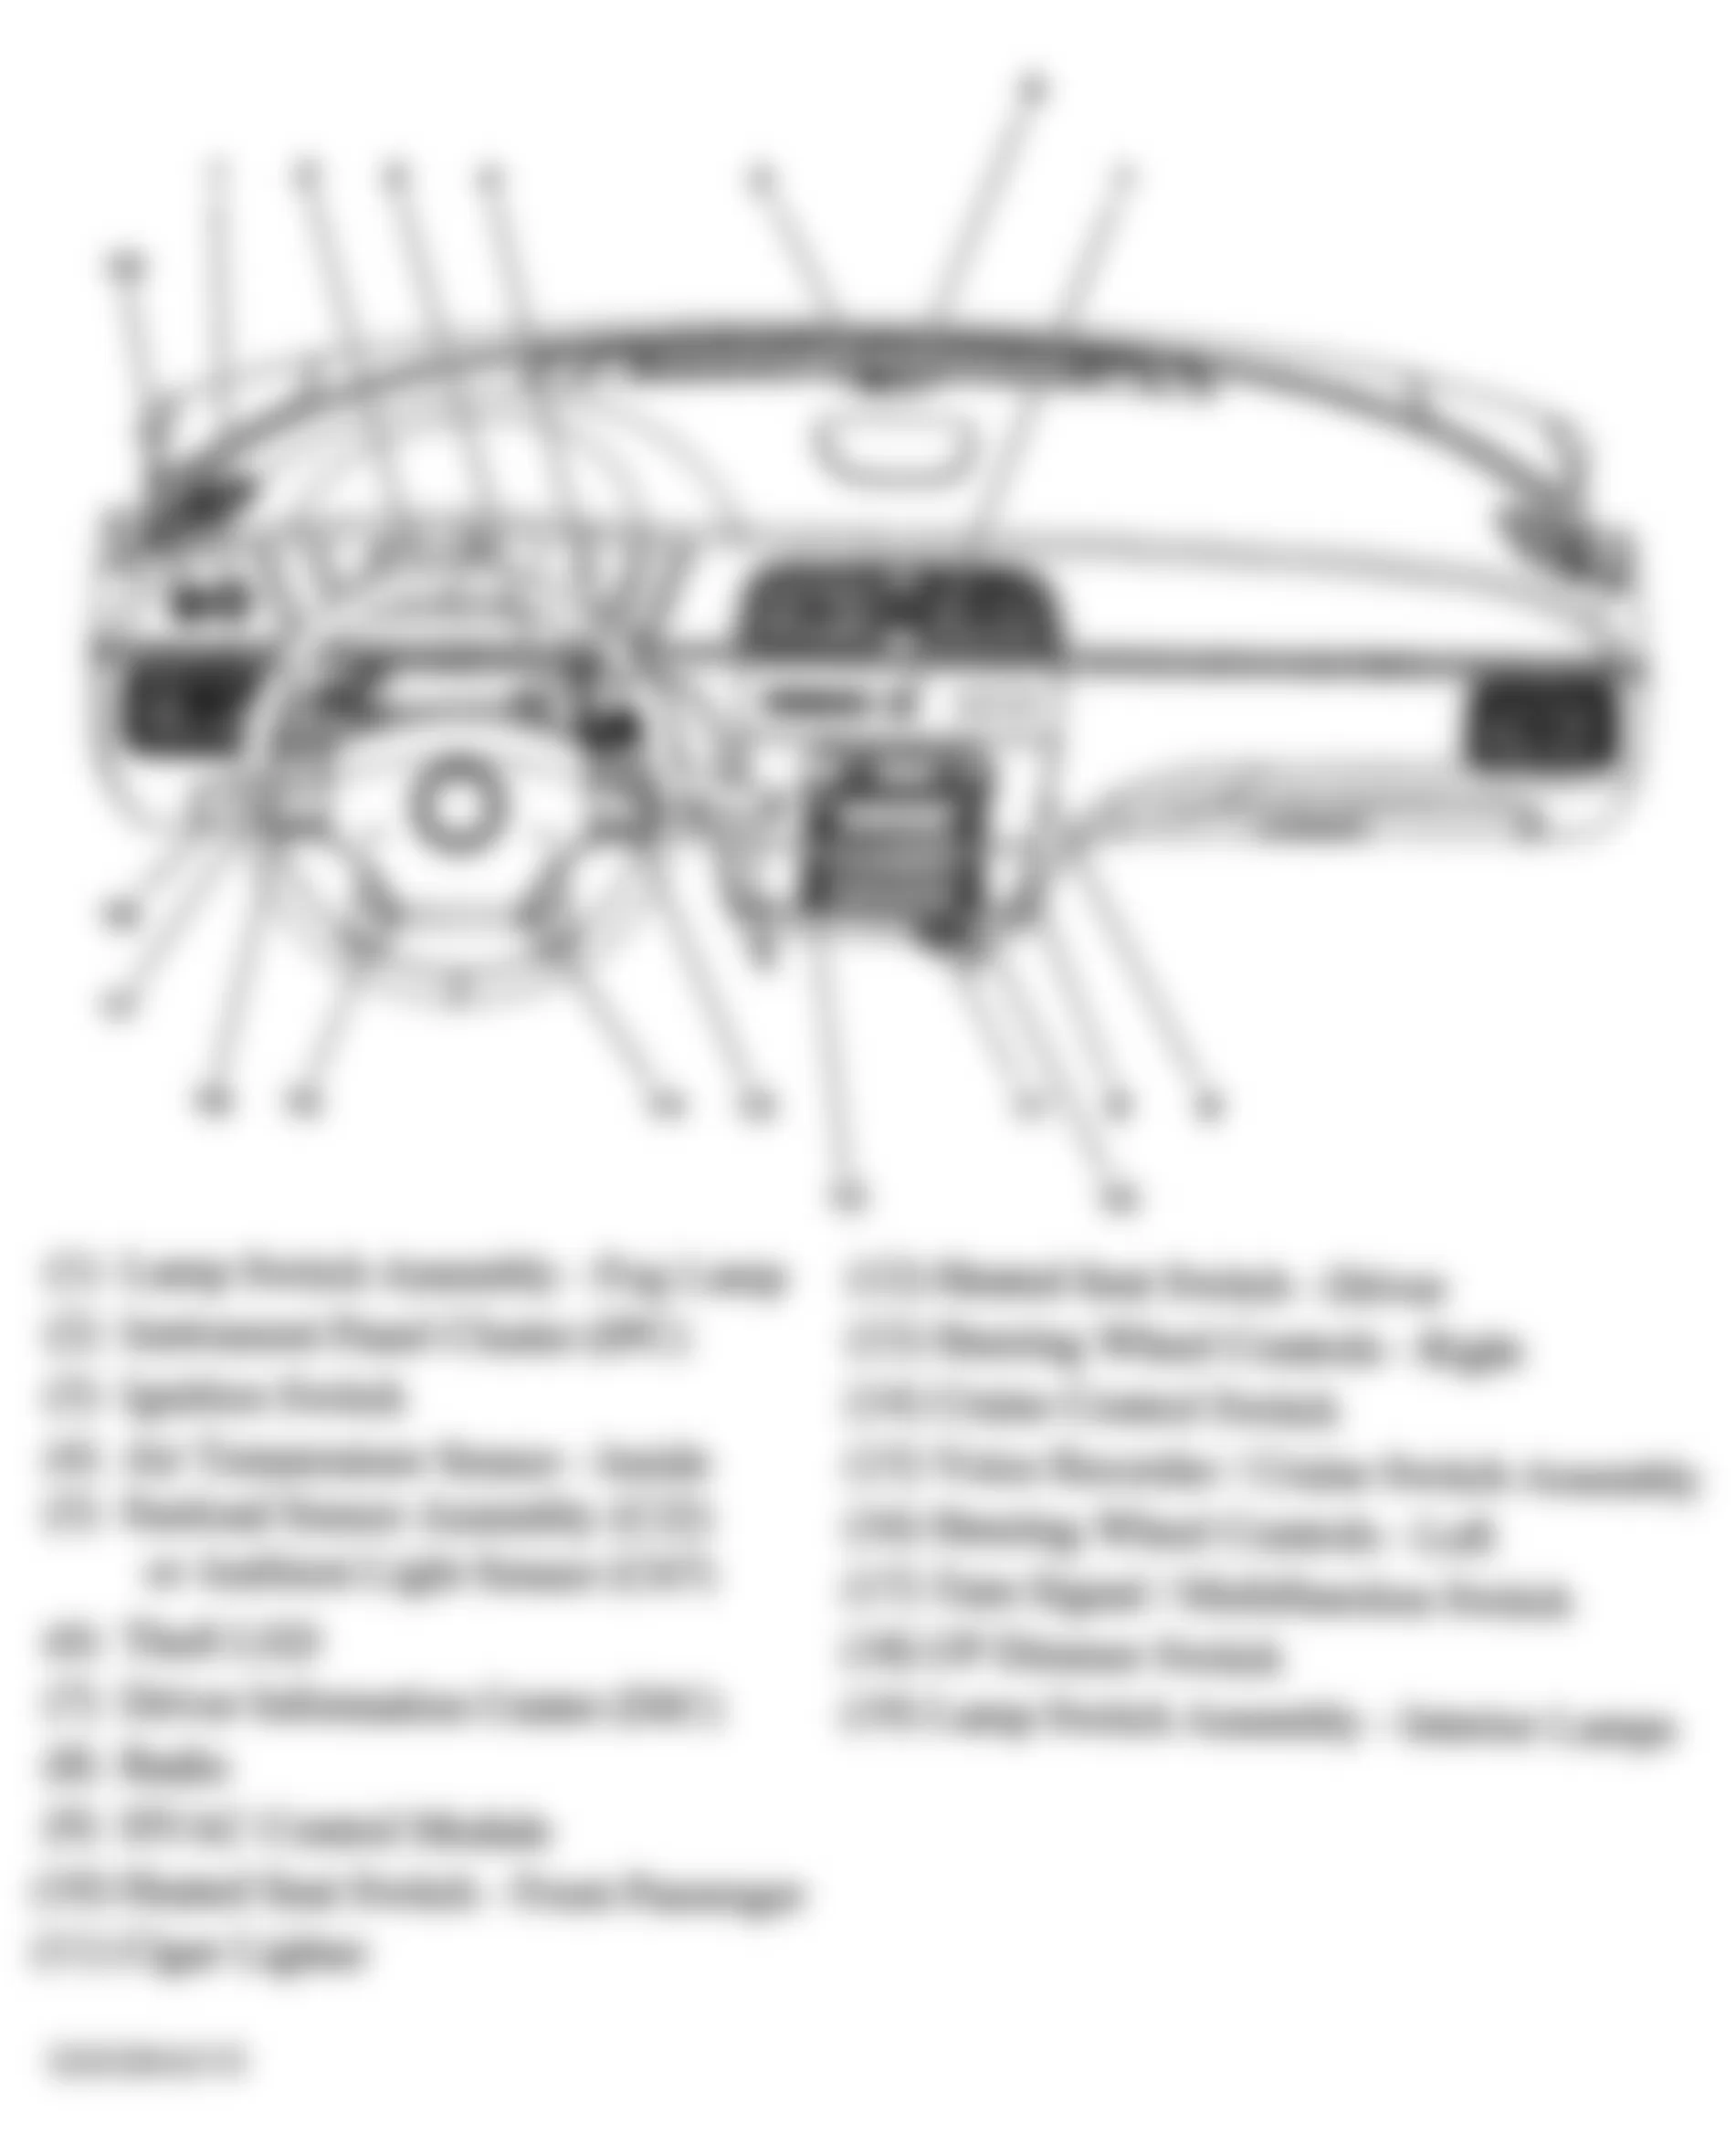 Buick Allure CX 2006 - Component Locations -  Dash